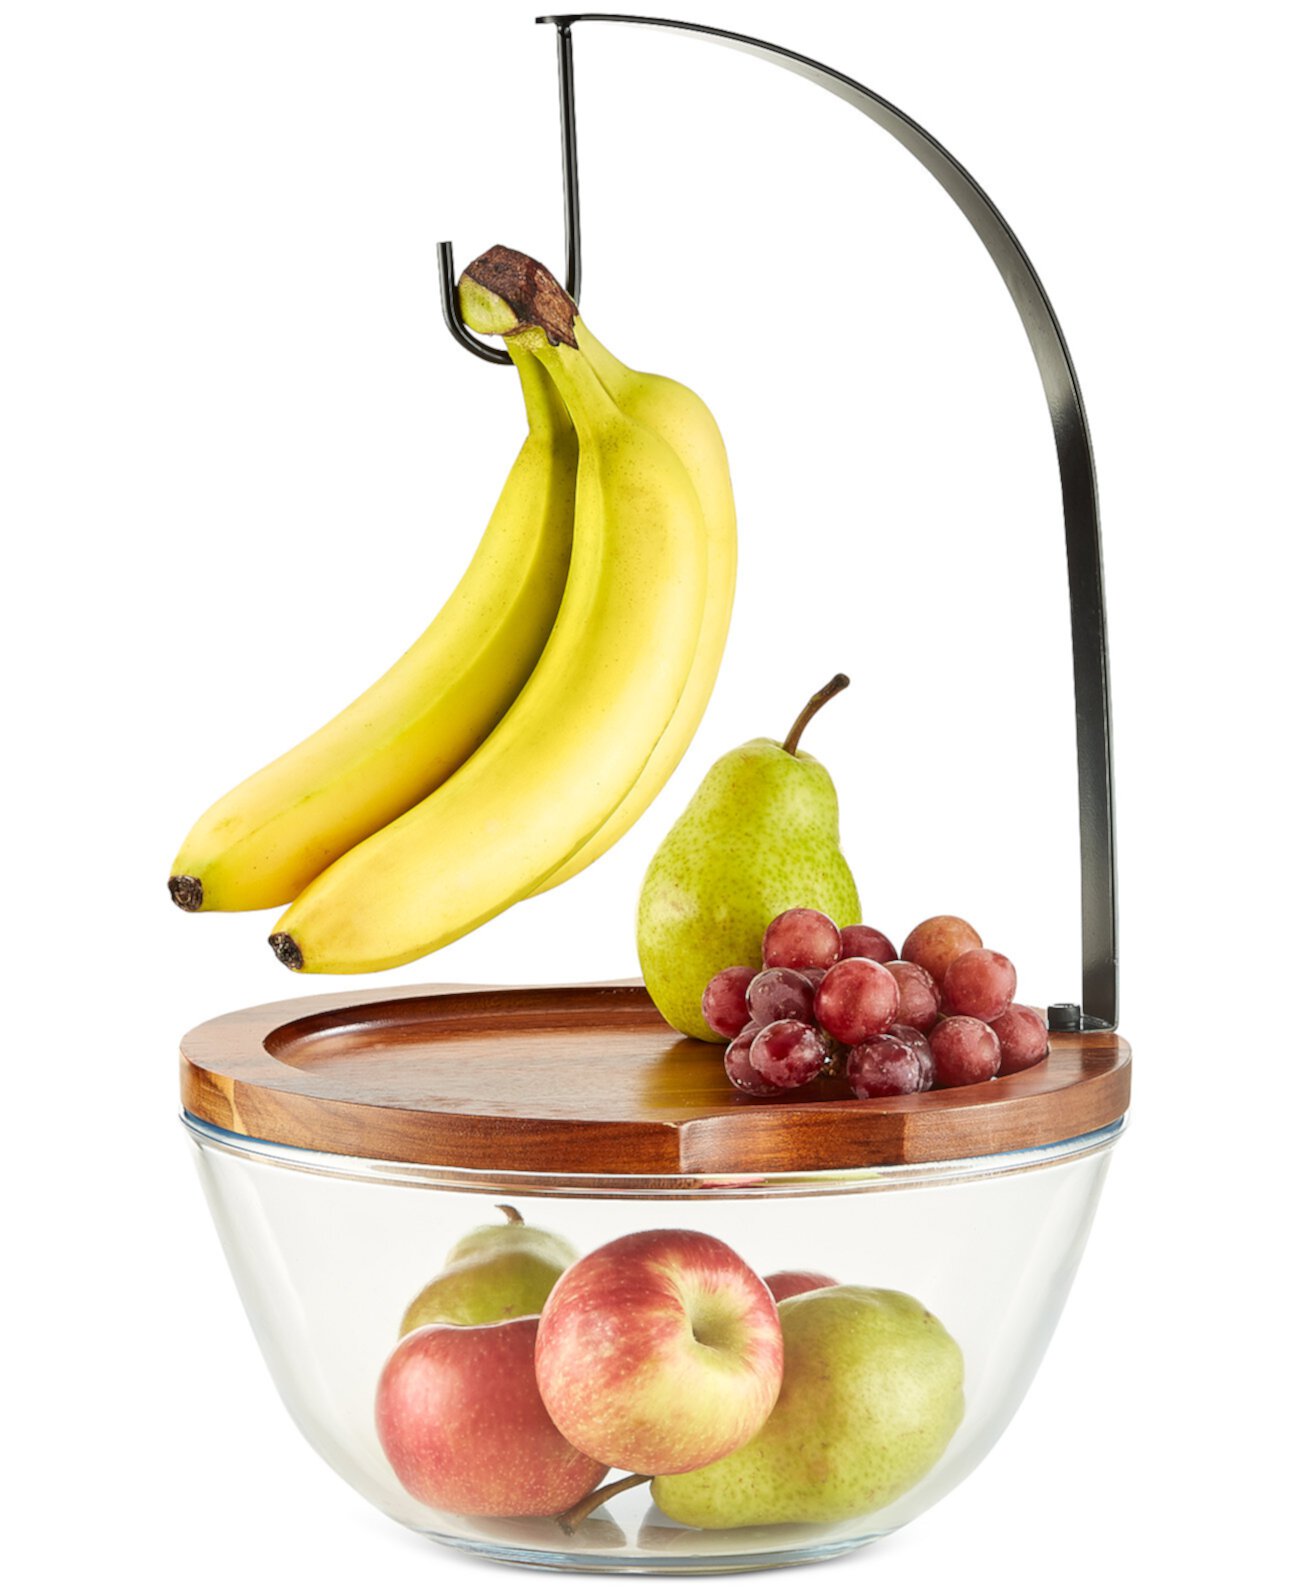 Ваза для фруктов из дерева и стекла с крючком для банана, созданная для Macy's The Cellar